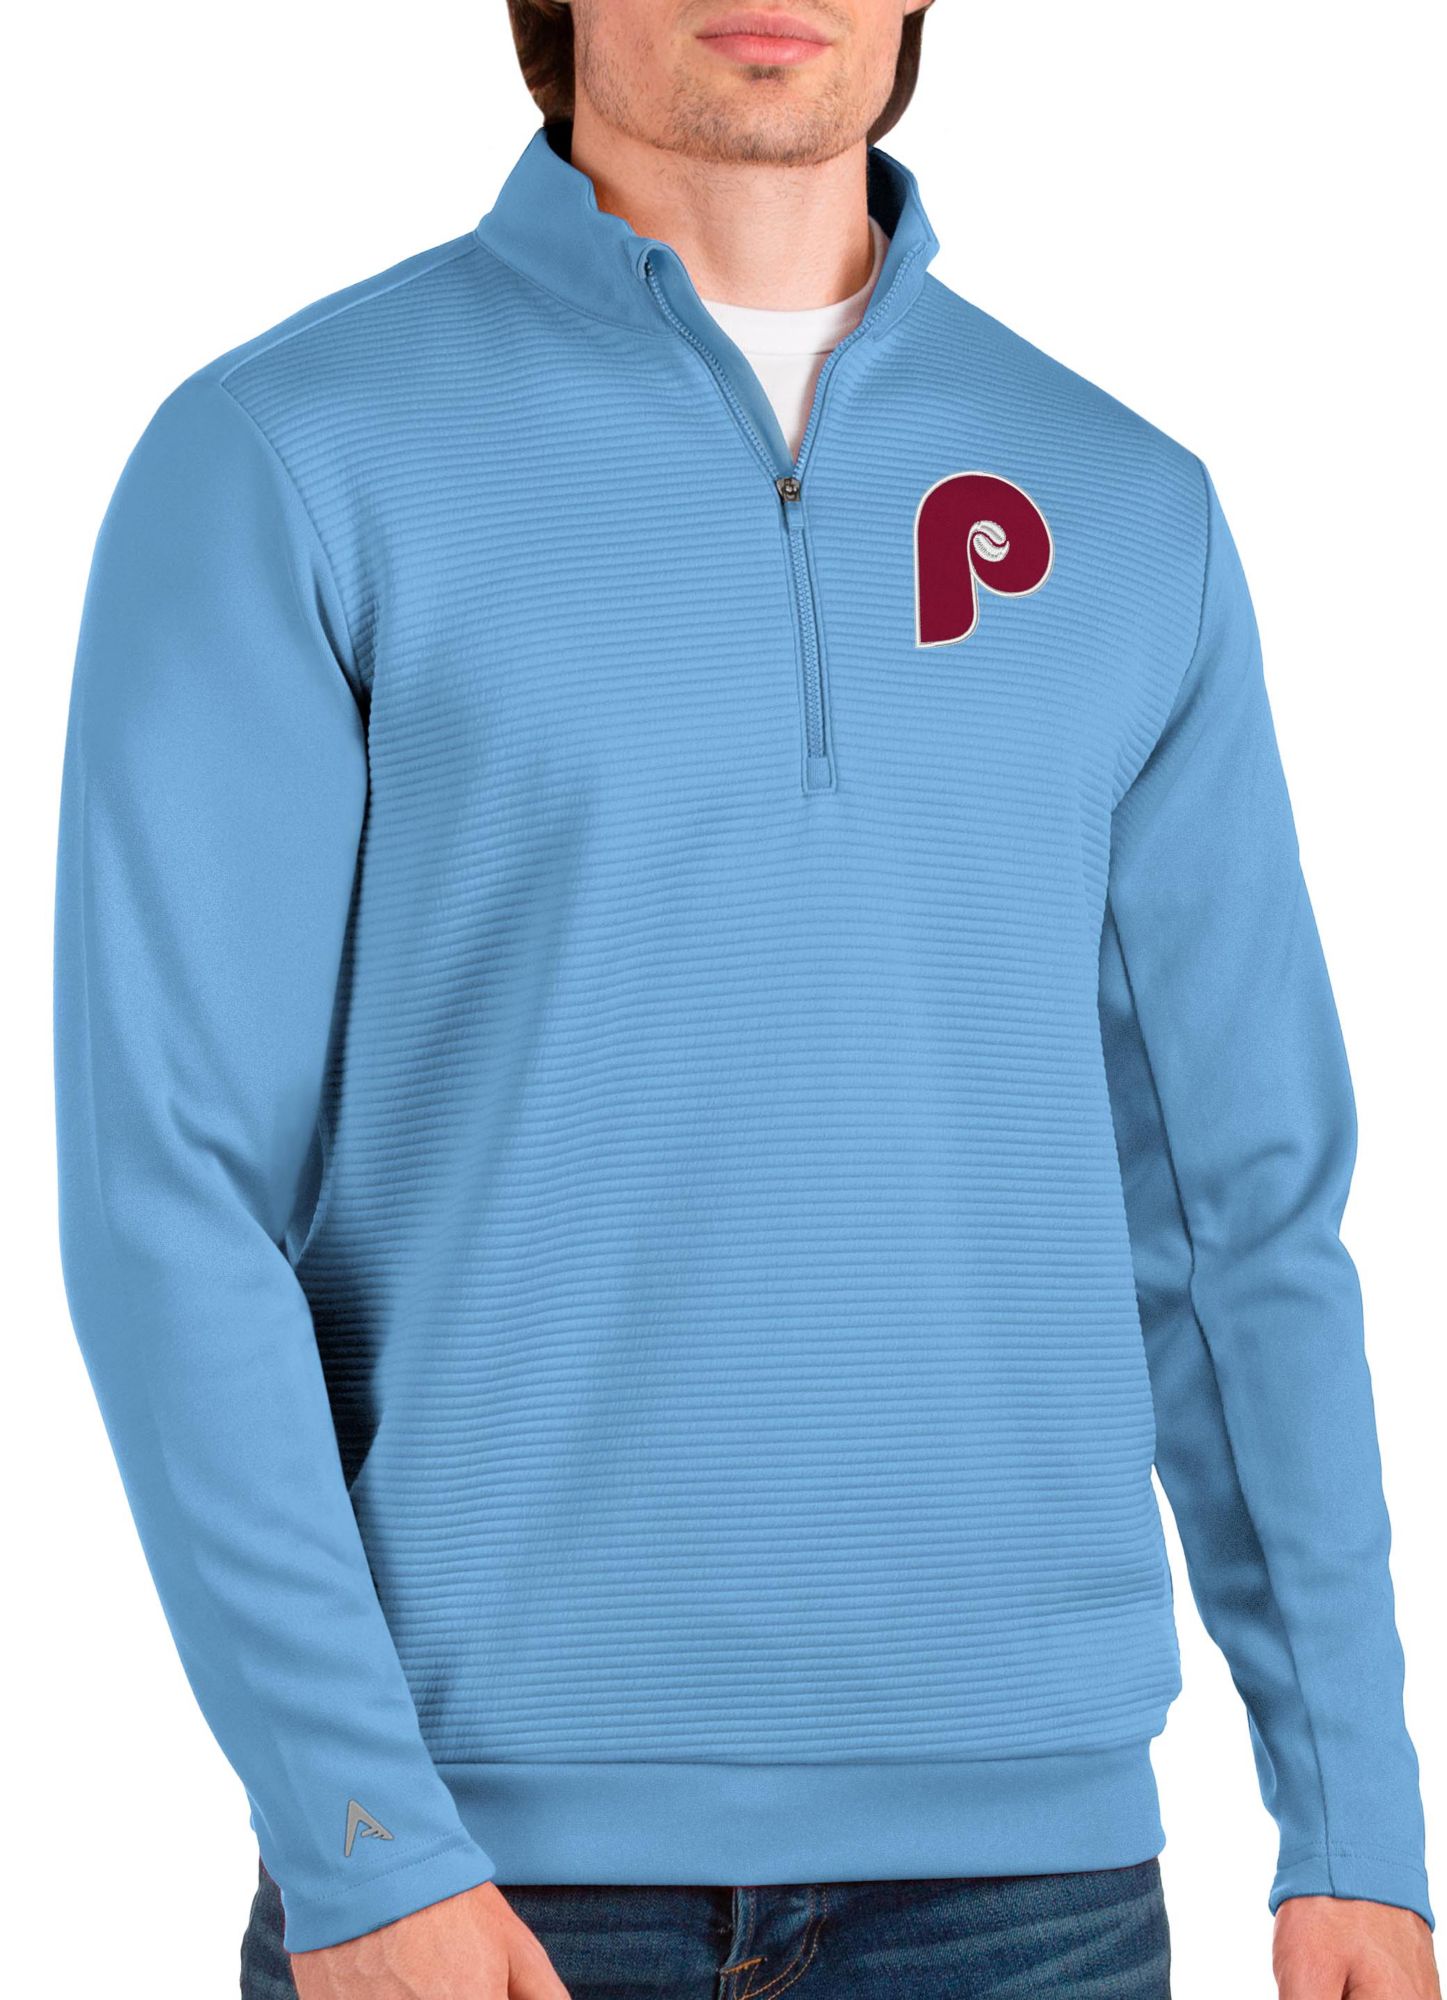 Phillies Kids Full Zip Sweatshirt